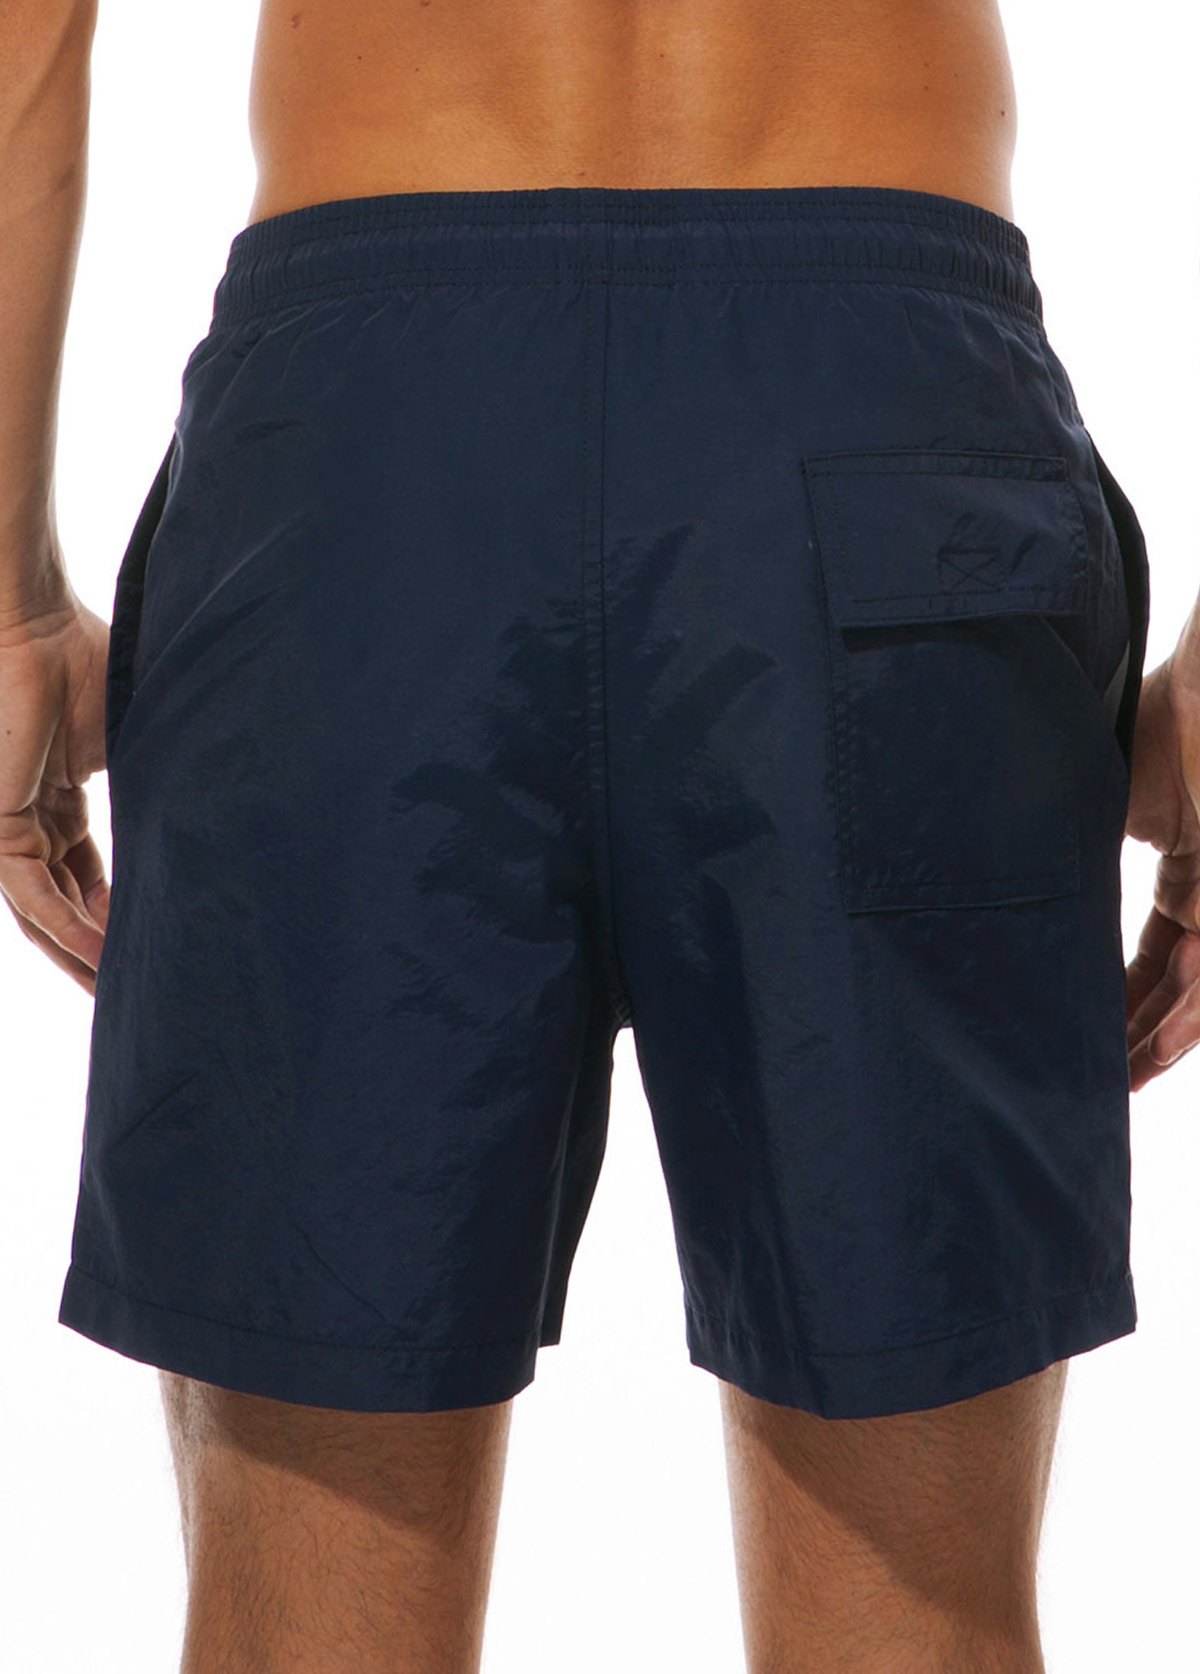 Navy Blue Breathable Mesh Waterproof Swim Trunks for Men